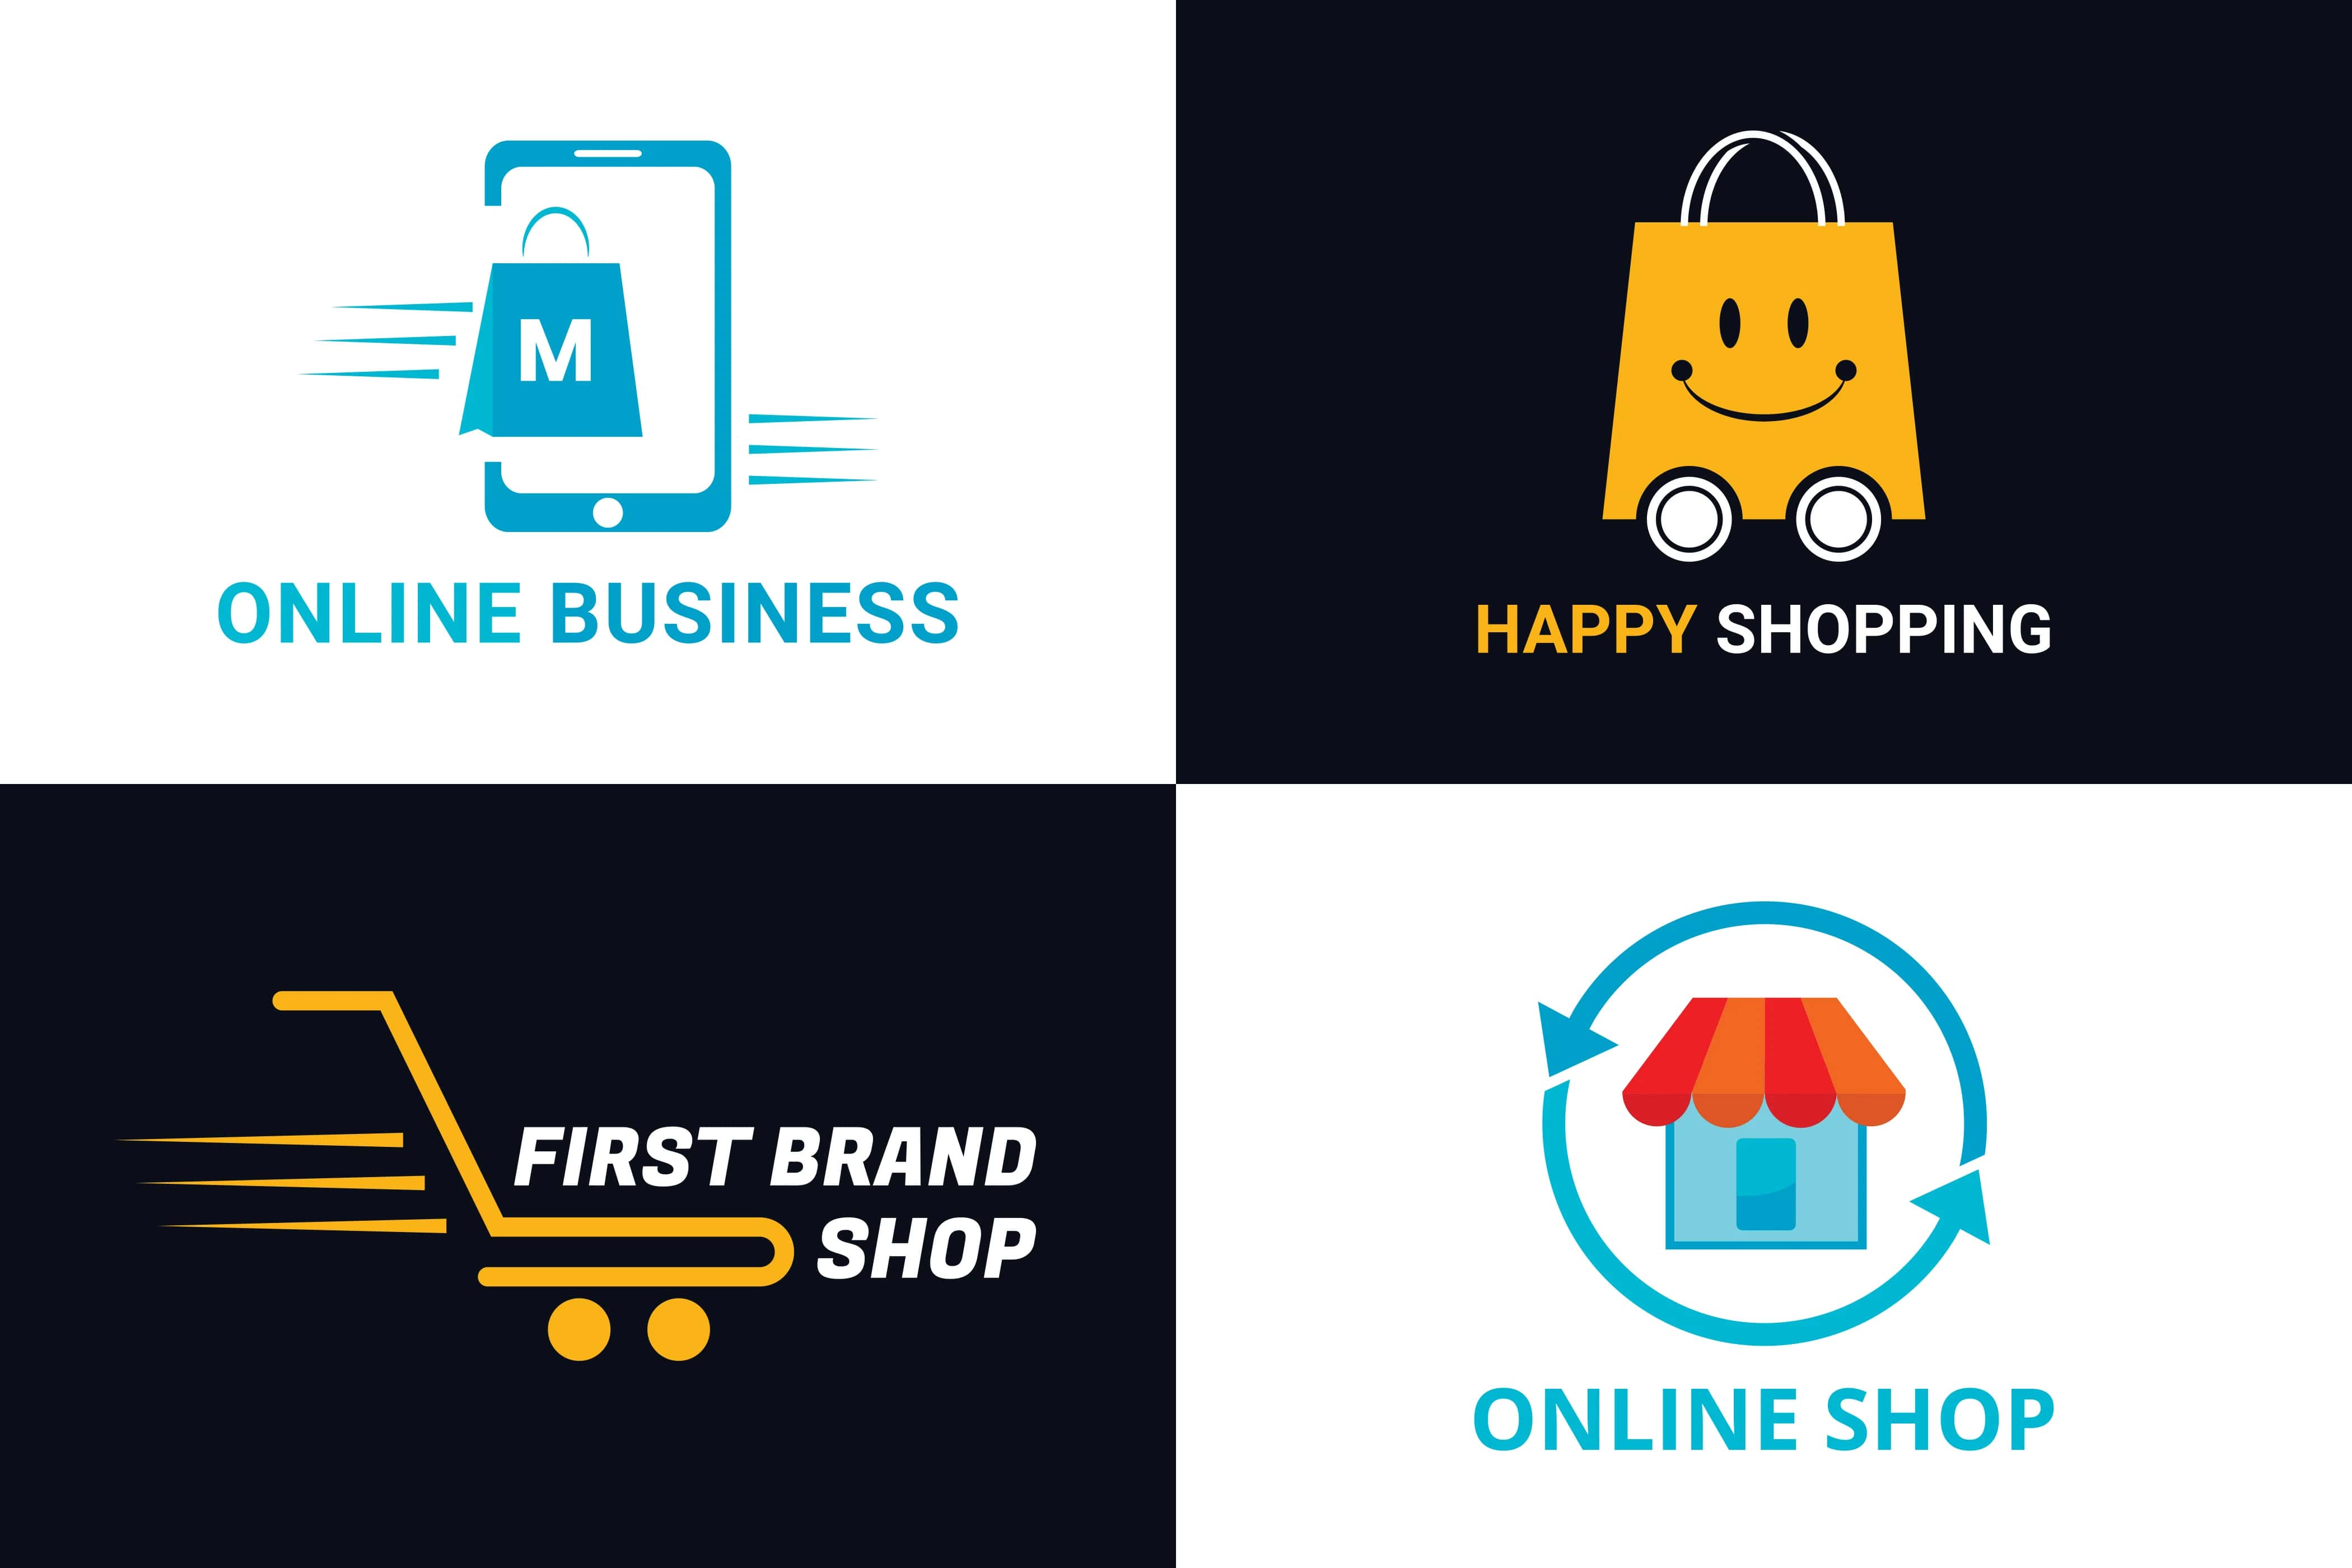 Tổng hợp mẫu logo bán hàng online đẹp với nhiều phong cách khác nhau